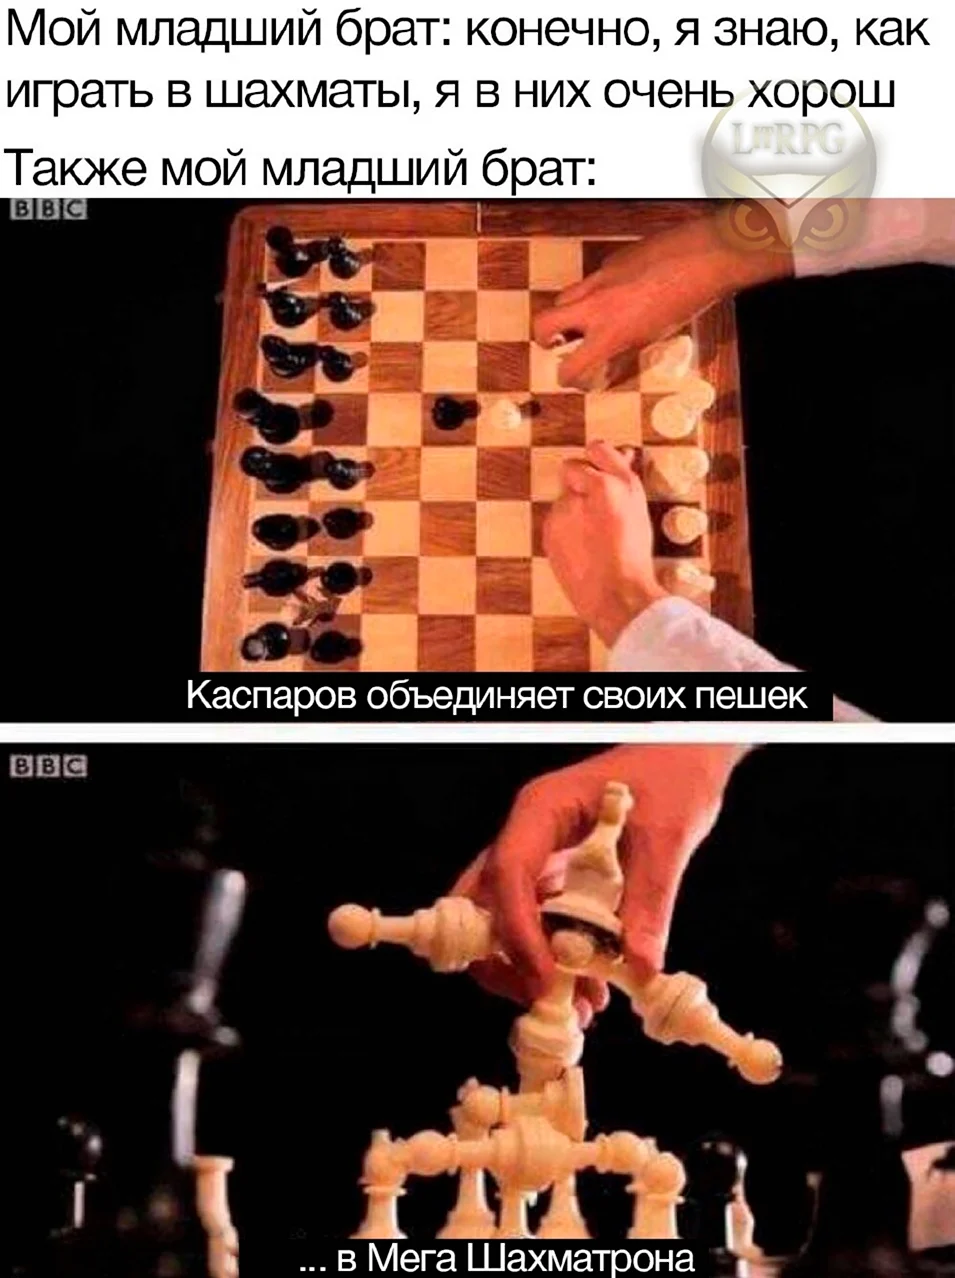 Каспаров объединяет своих пешек в мега шахматрона. Прикольная картинка